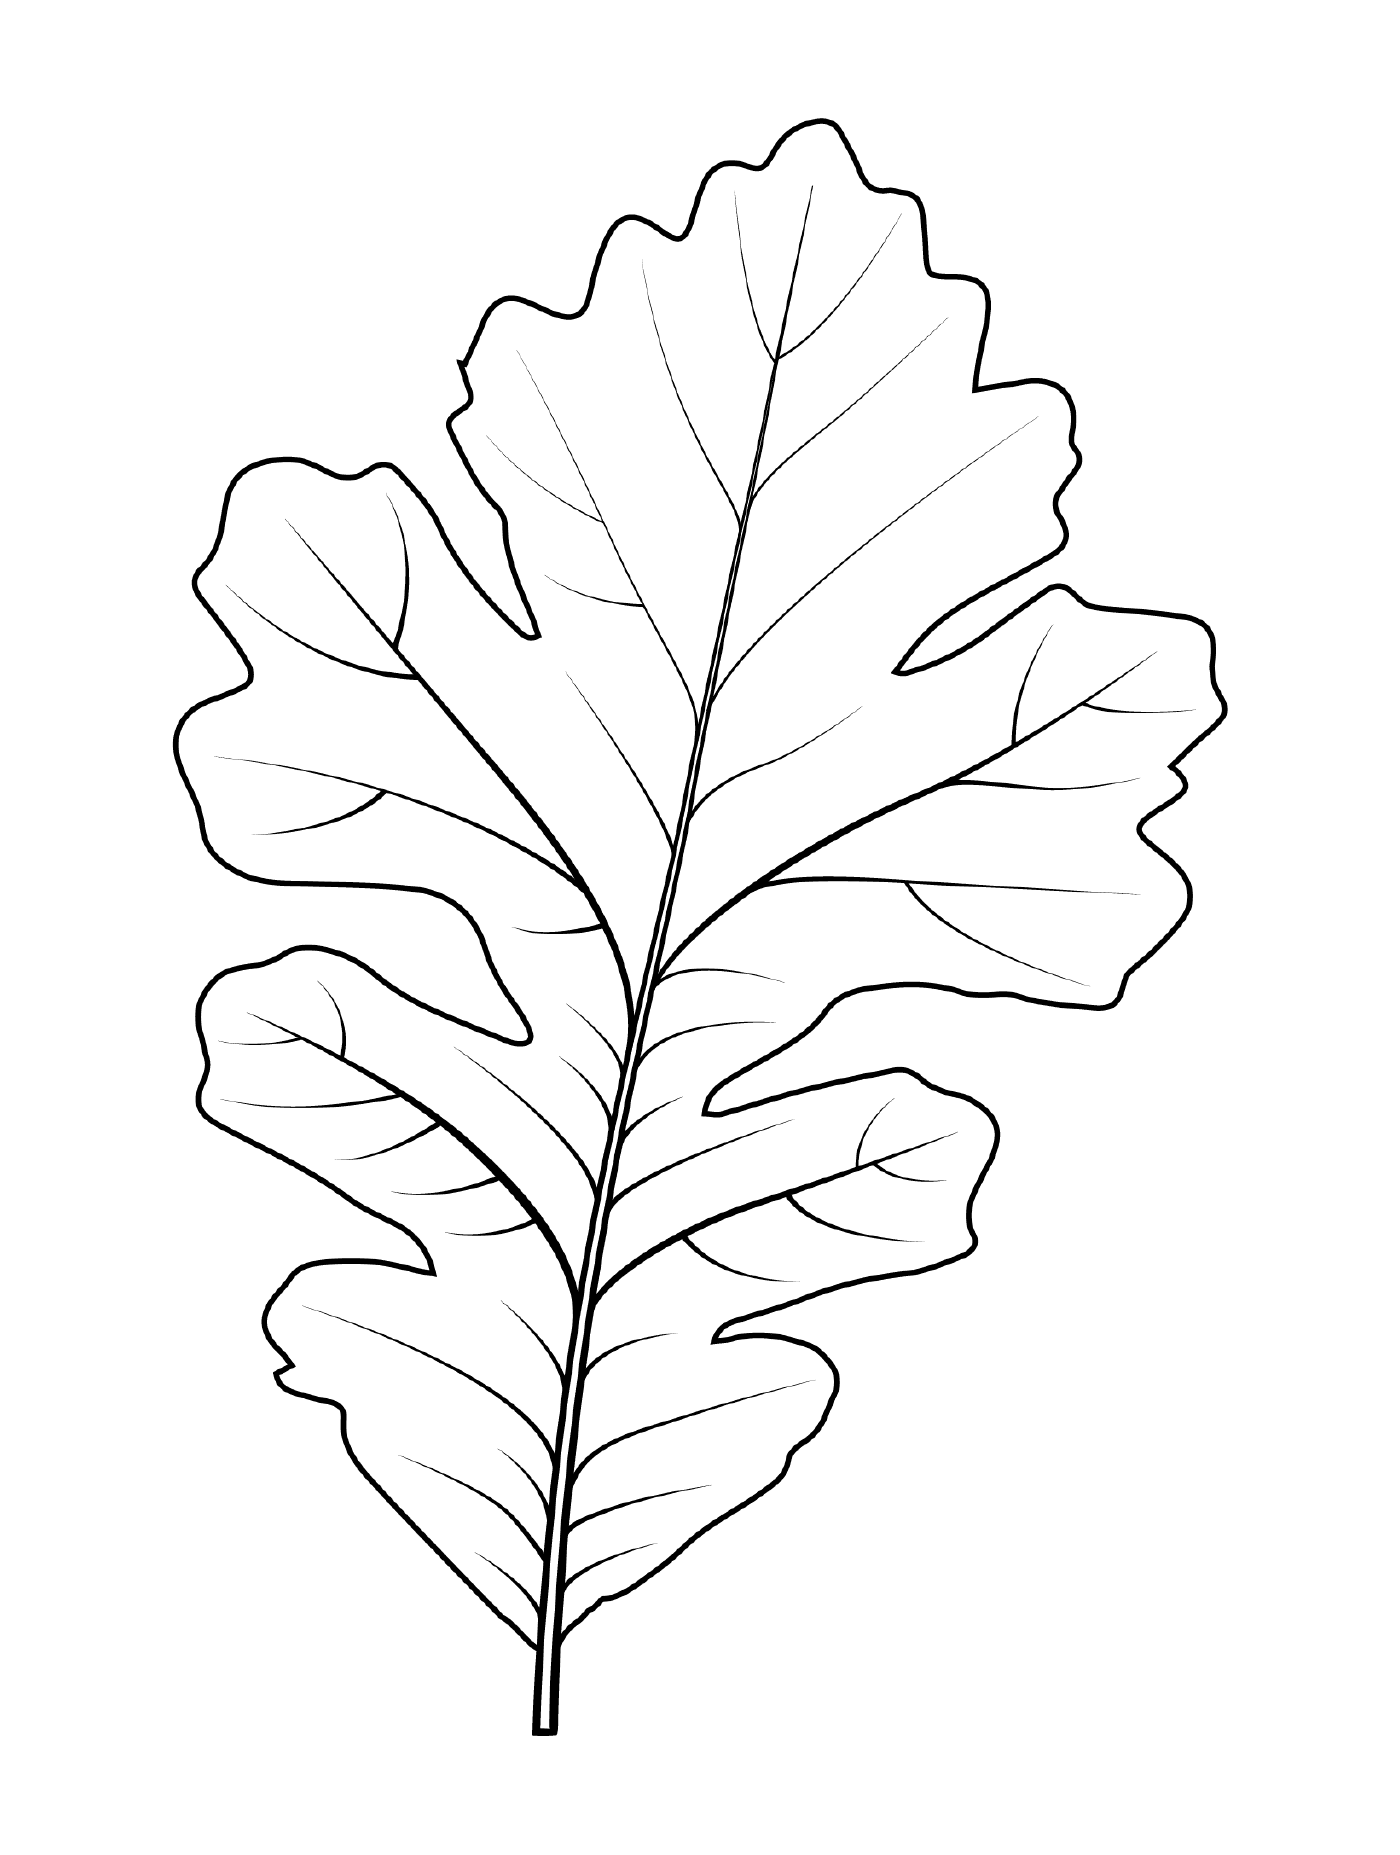  Крупноплодный дубовый лист 